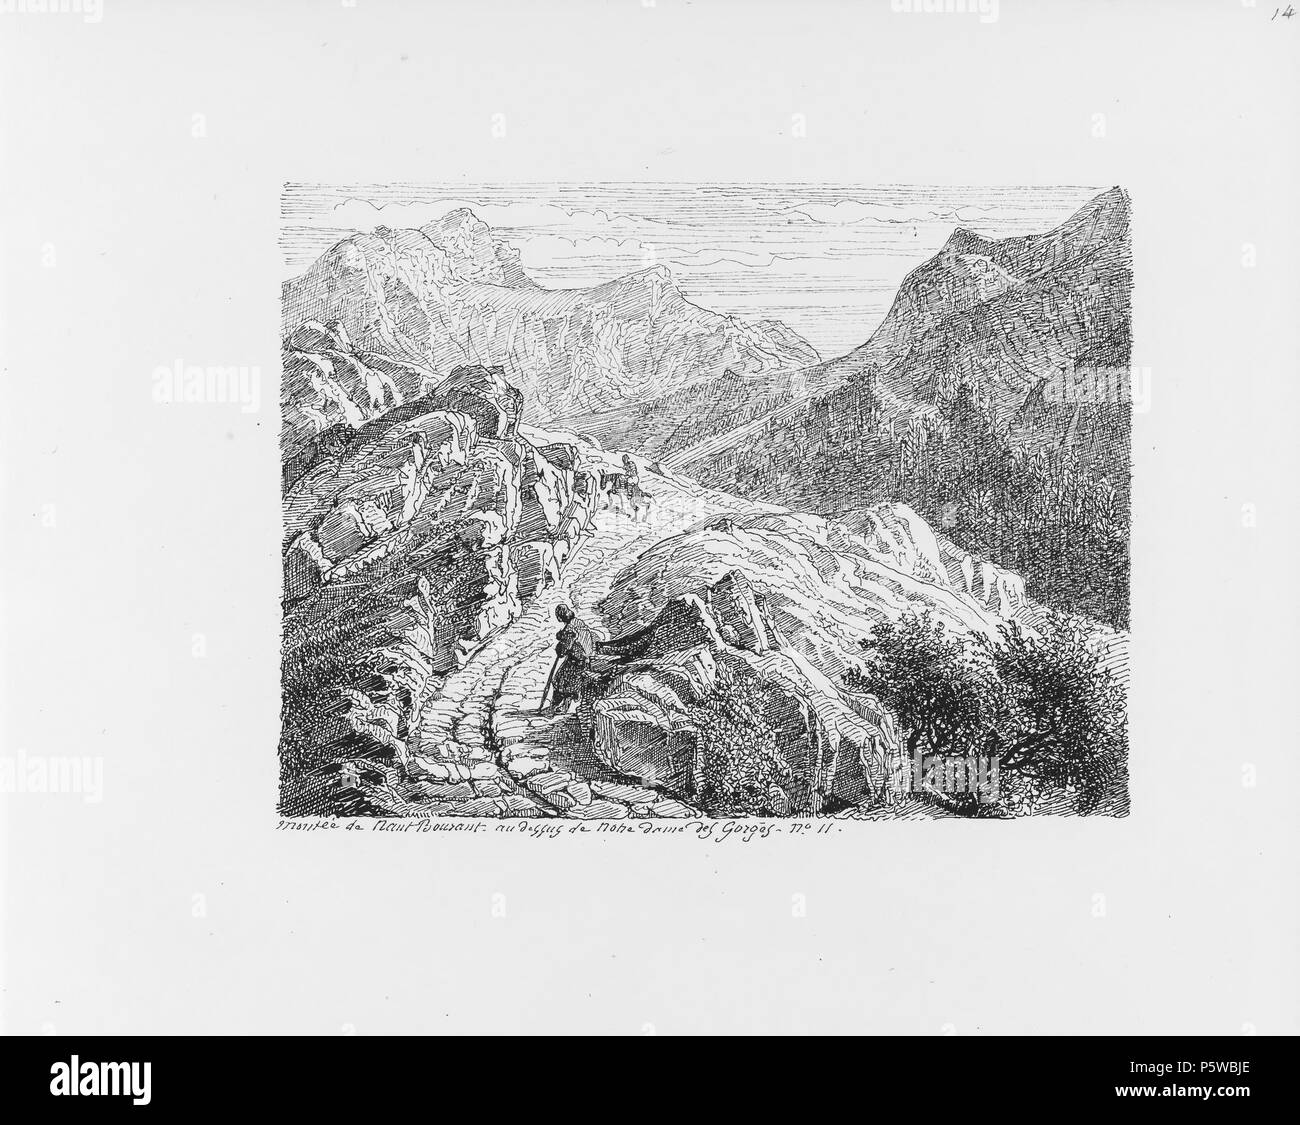 322 CH-NB-Voyage autour du Mont-Blanc dans les vallées d'Hérens de Zermatt et au Grimsel 1843-nbdig-19161-013 Stock Photo